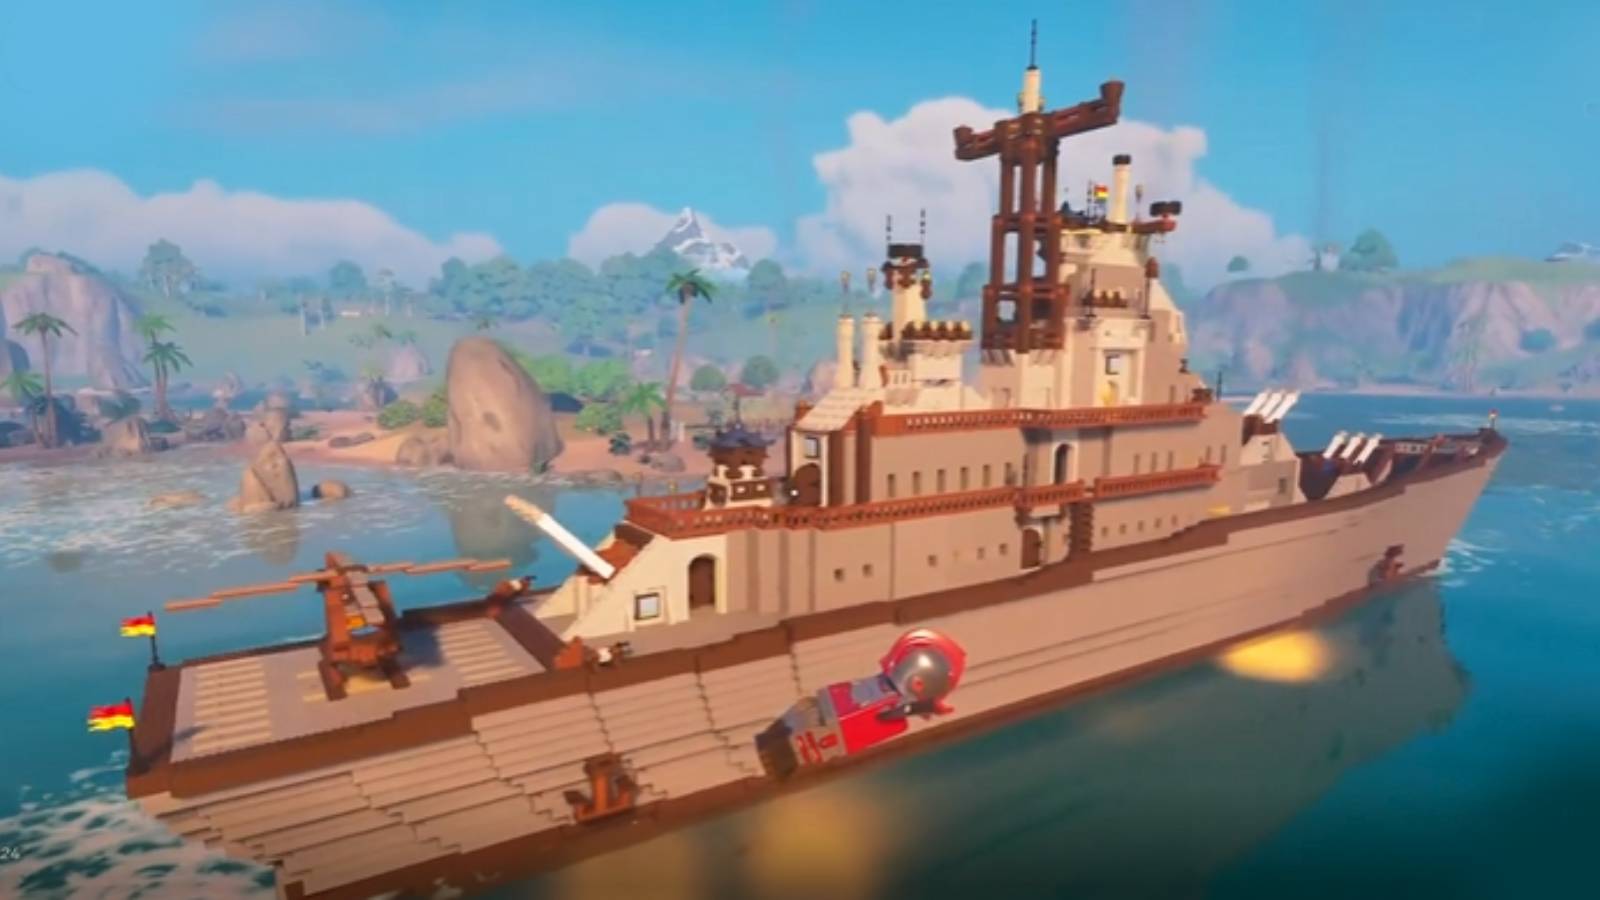 LEGO Fortnite battleship built in the game.